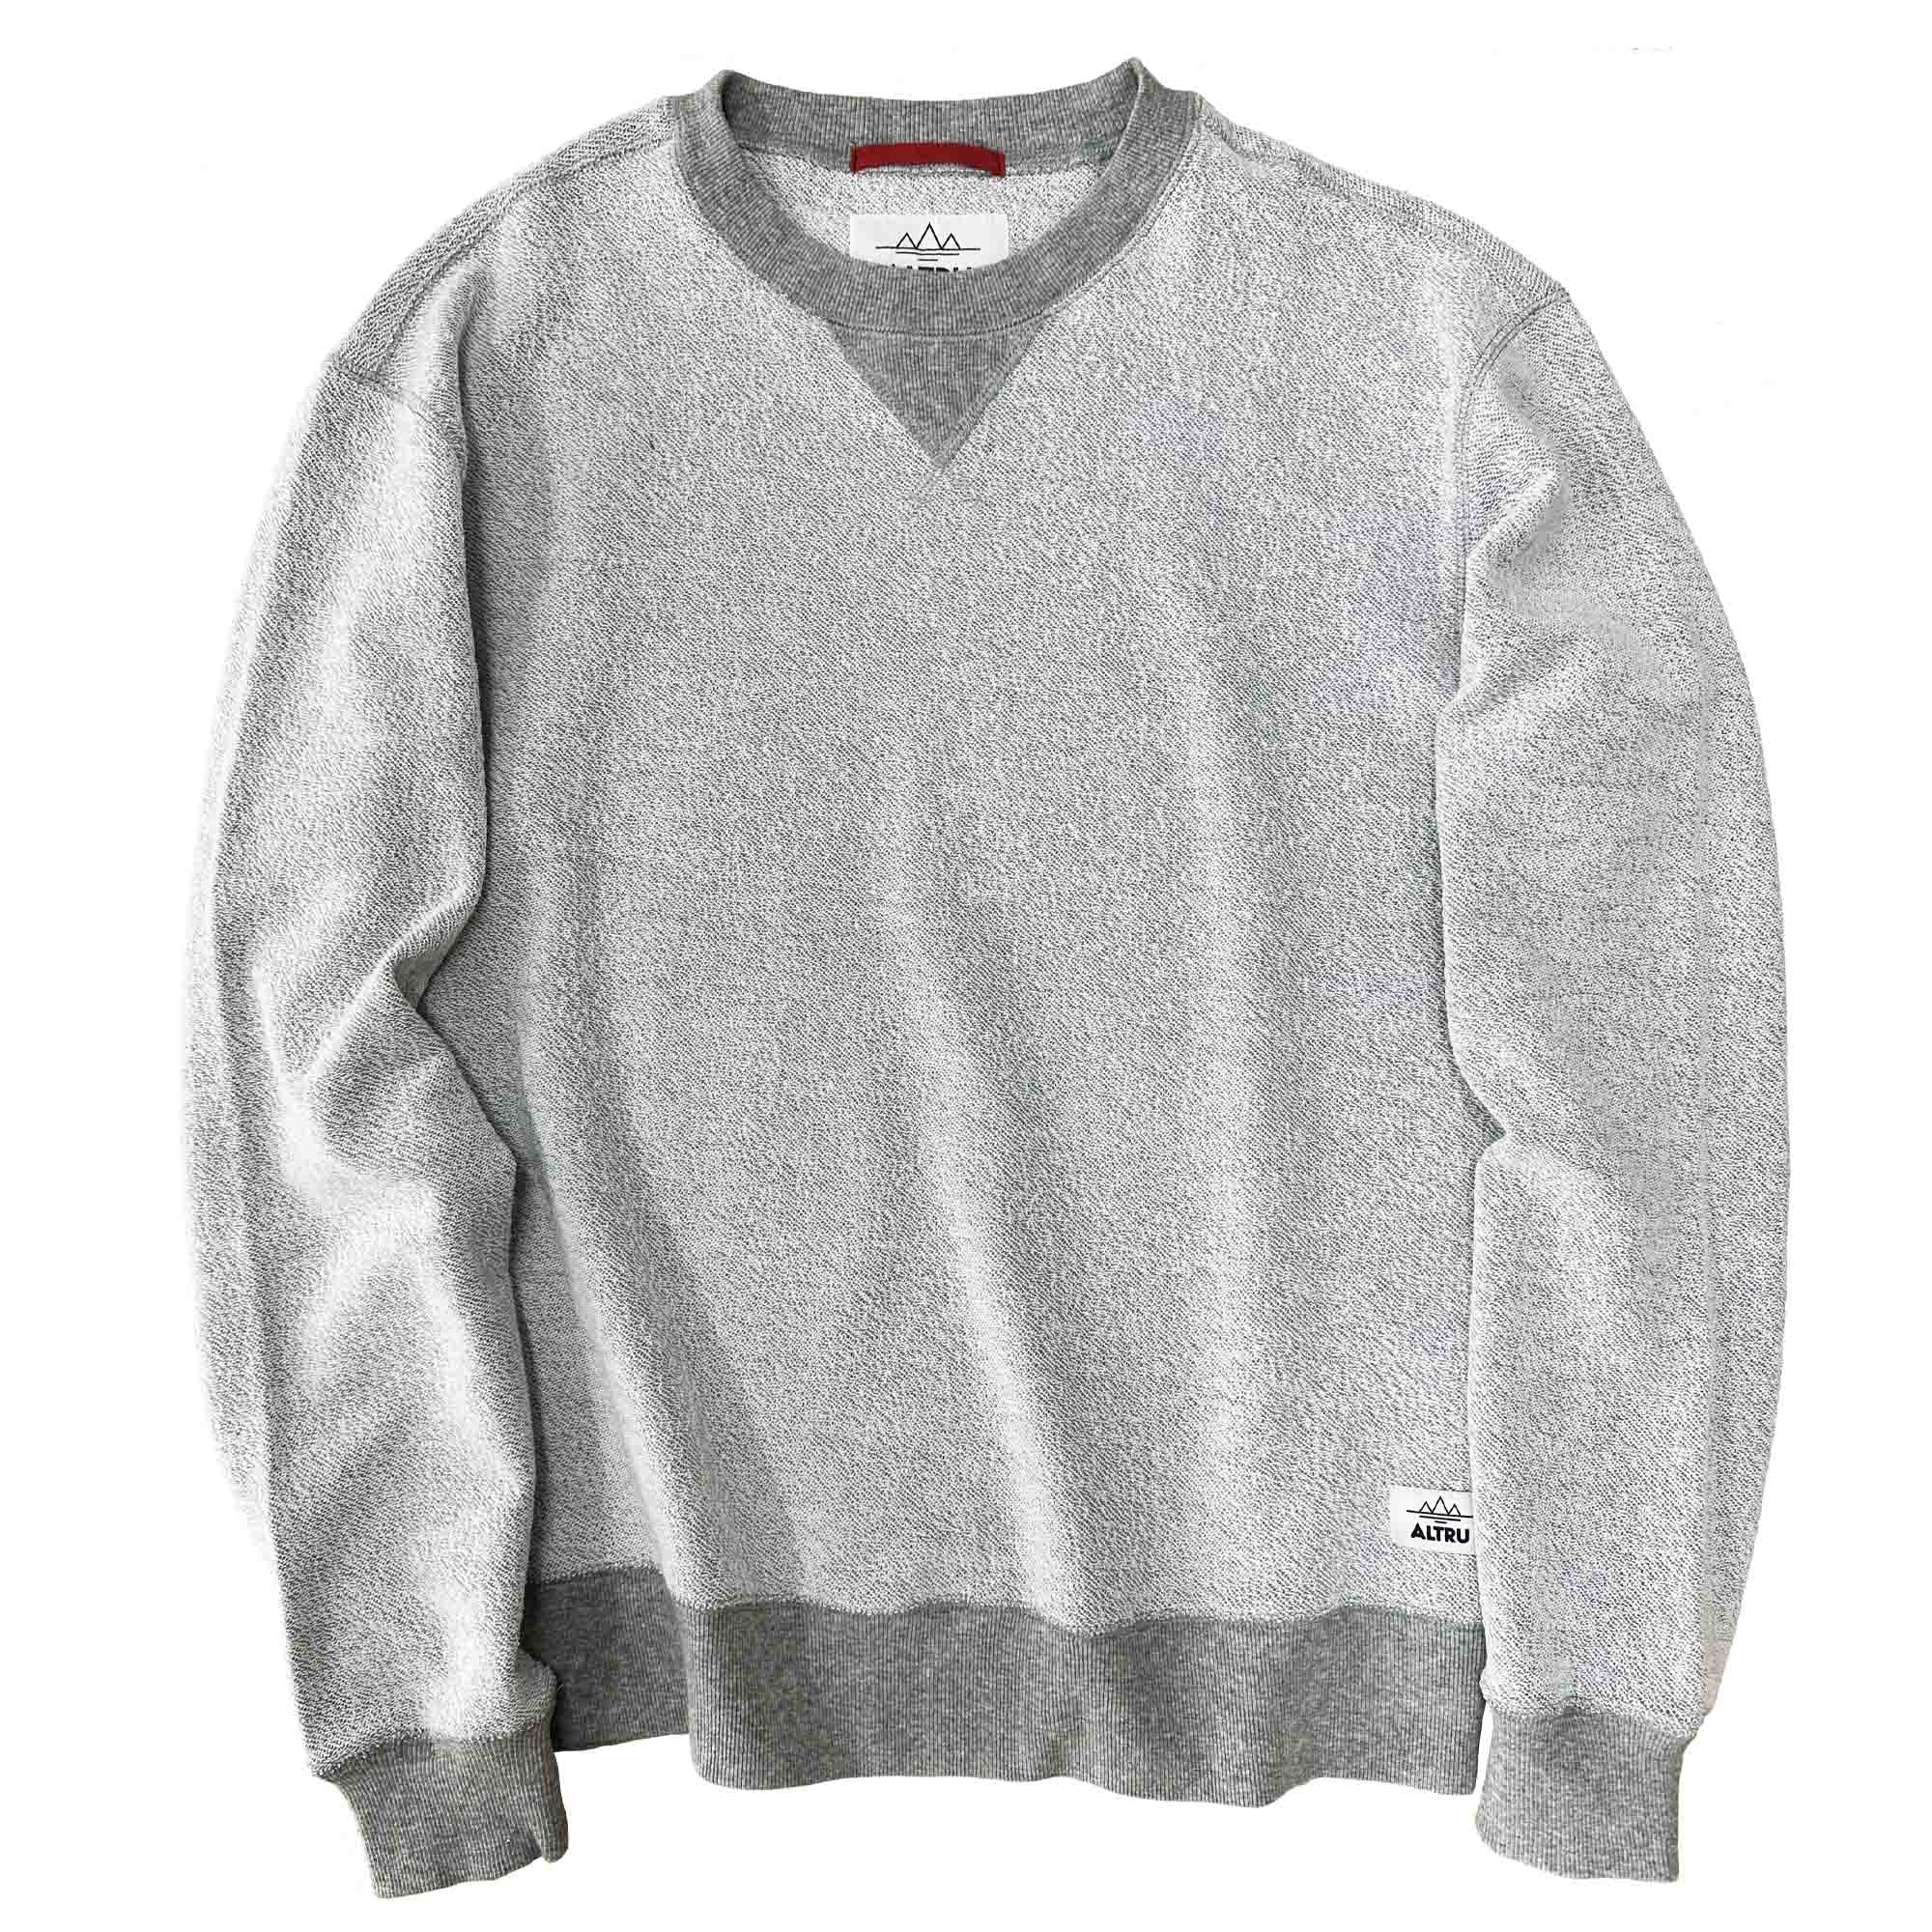 Buy Reverse Crew loop terry Sweatshirt